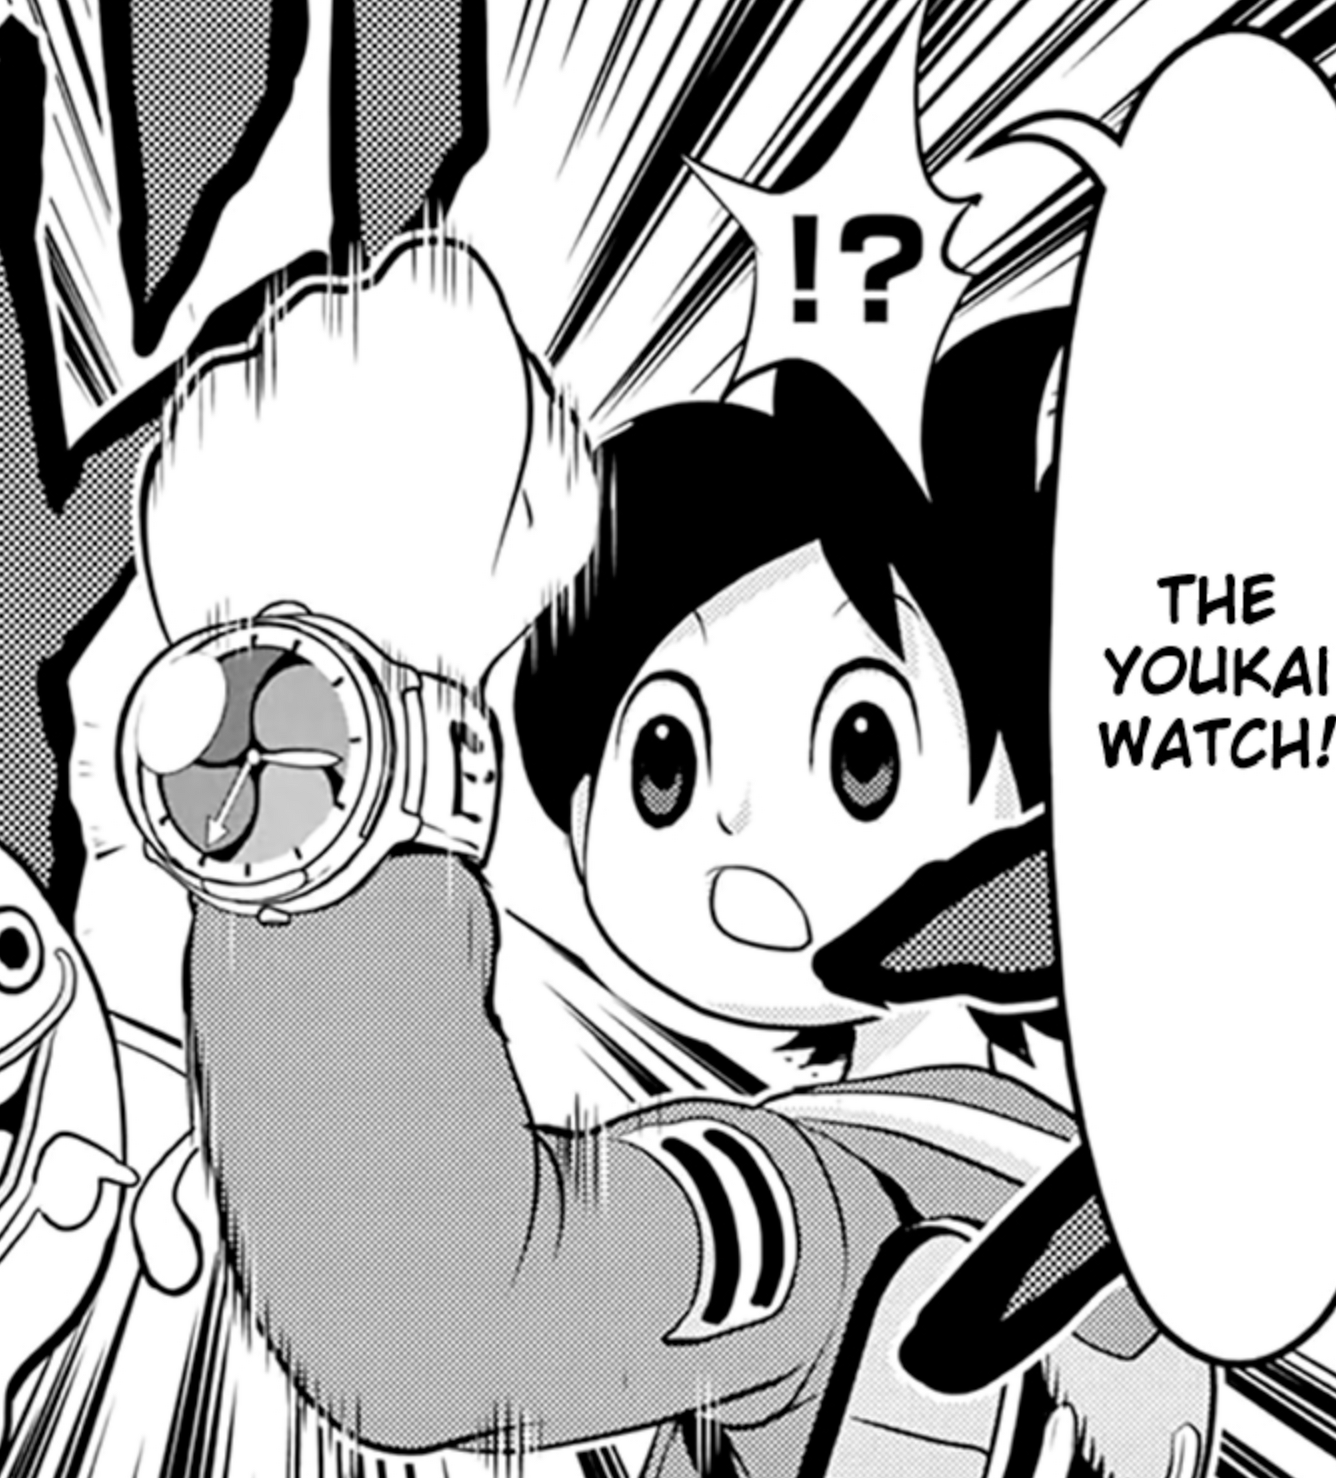 Yo-kai watch manga out of context. : r/yokaiwatch